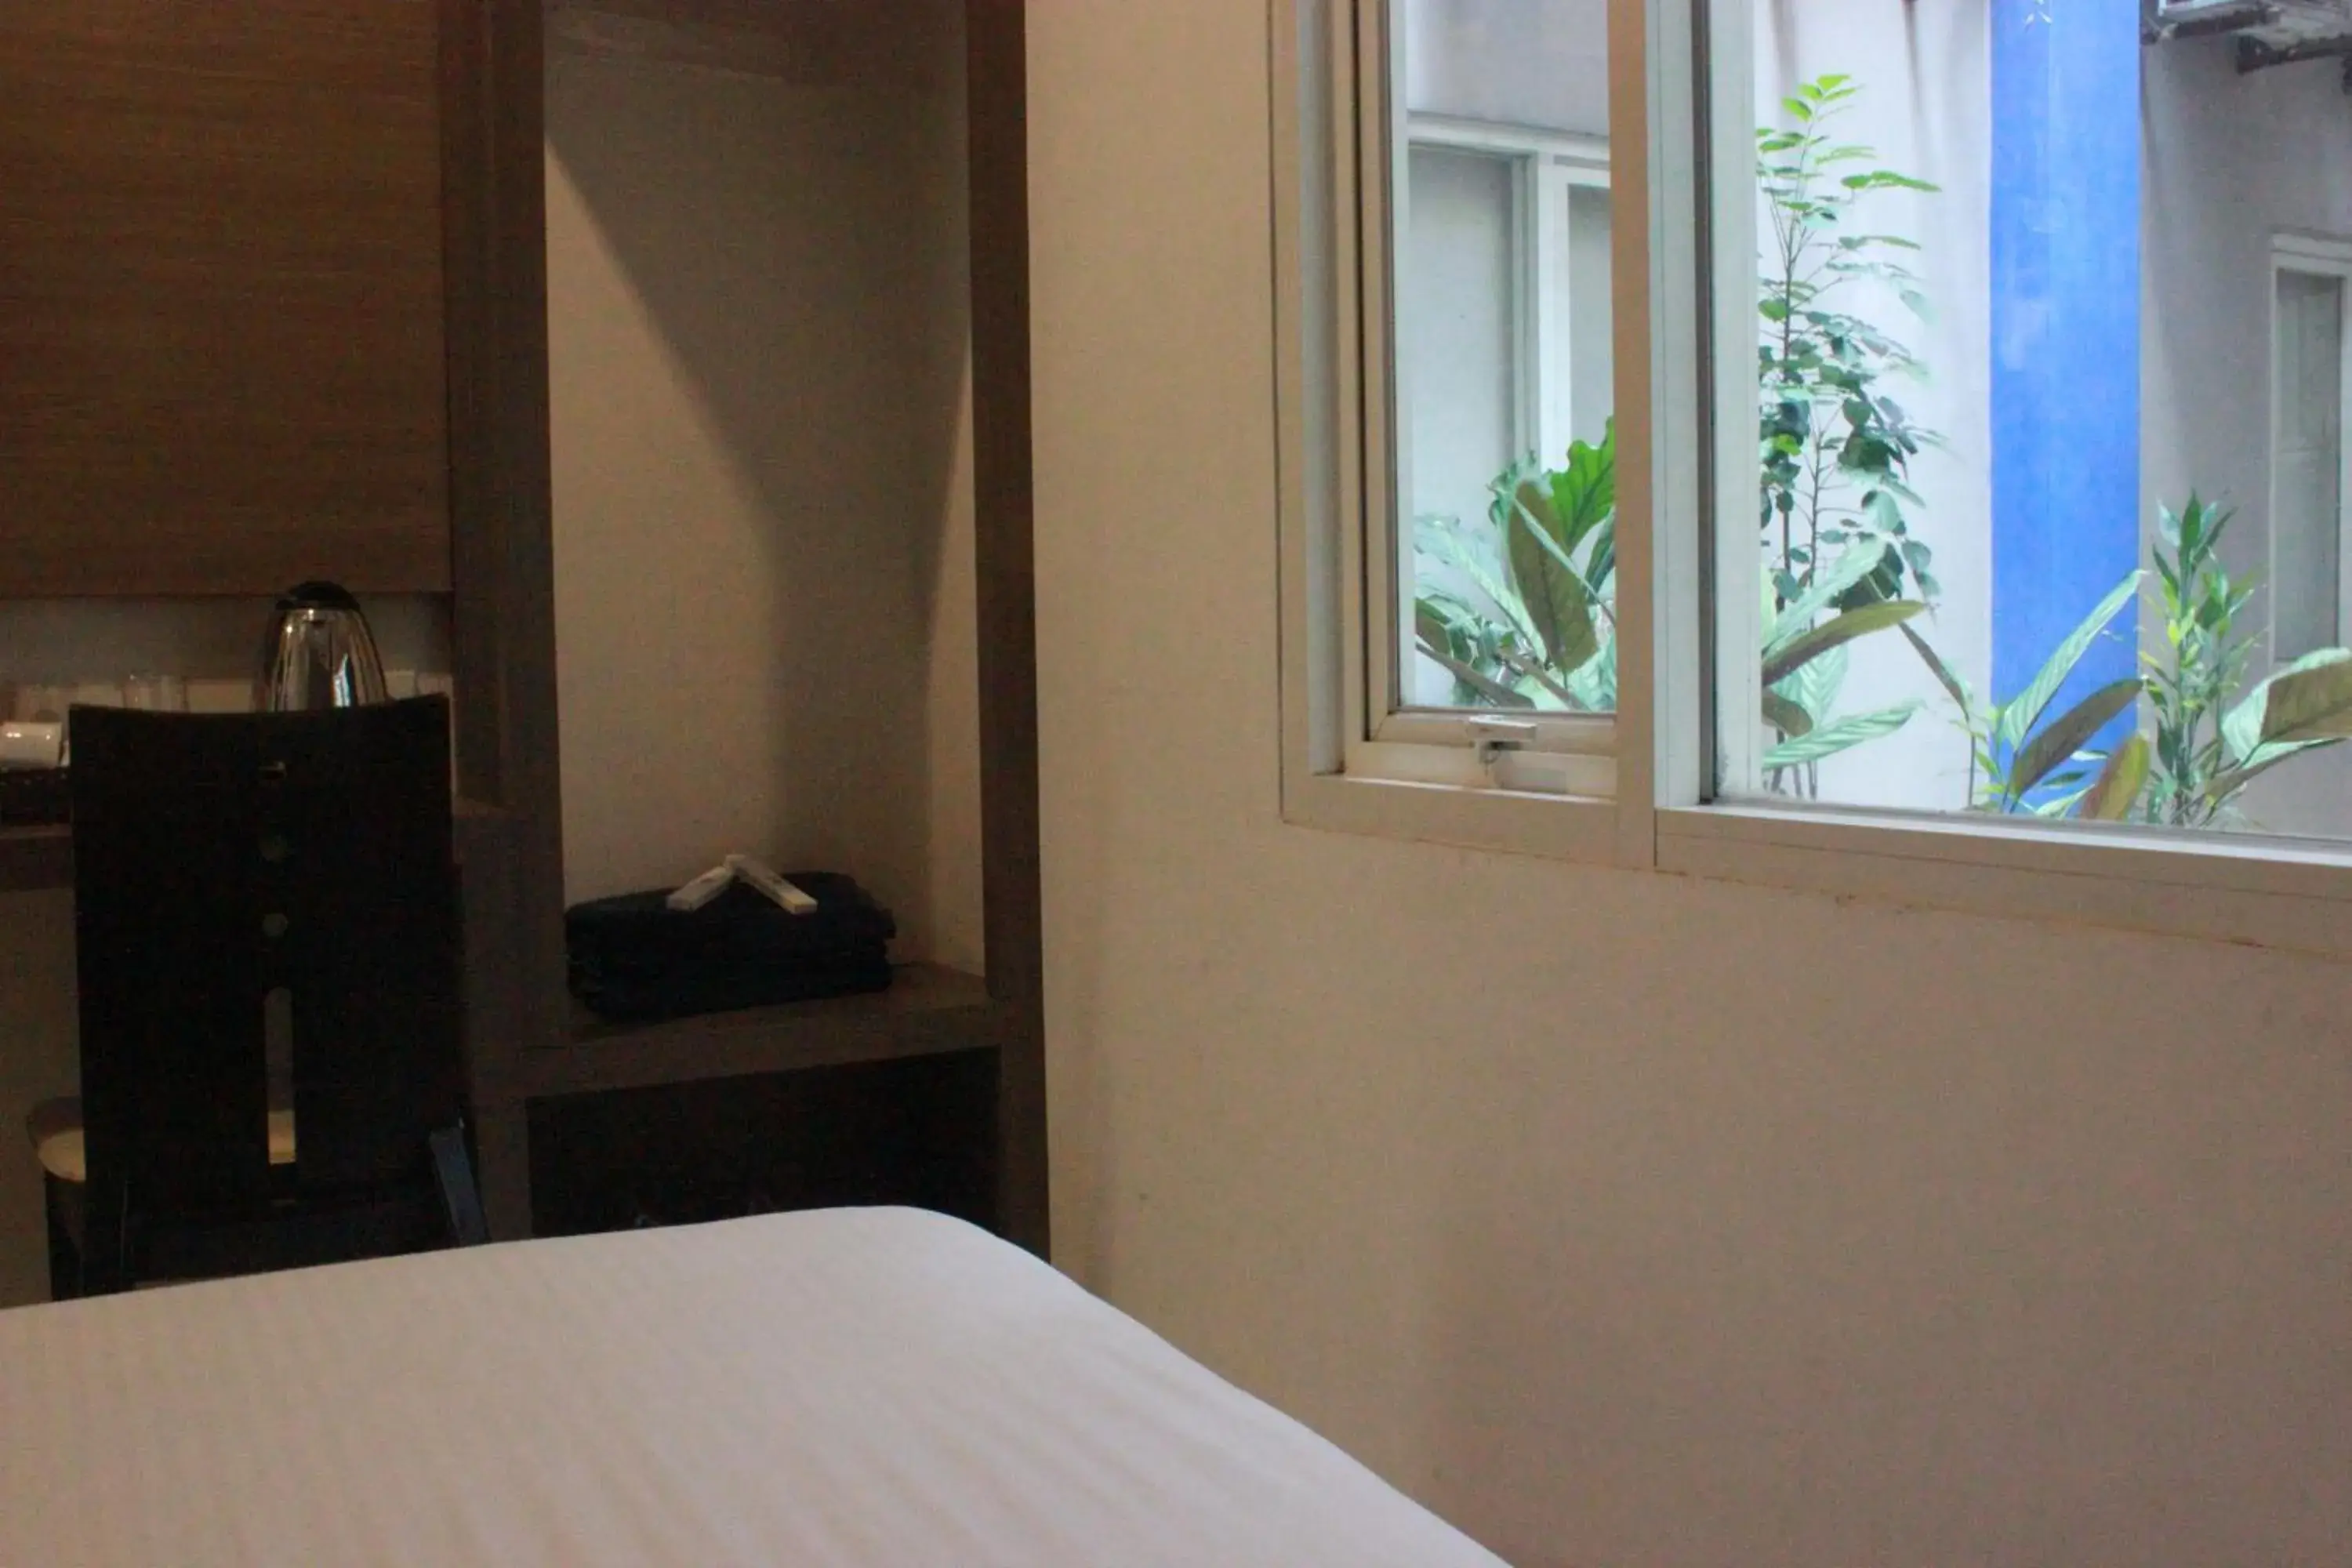 Bed in Dalu Hotel